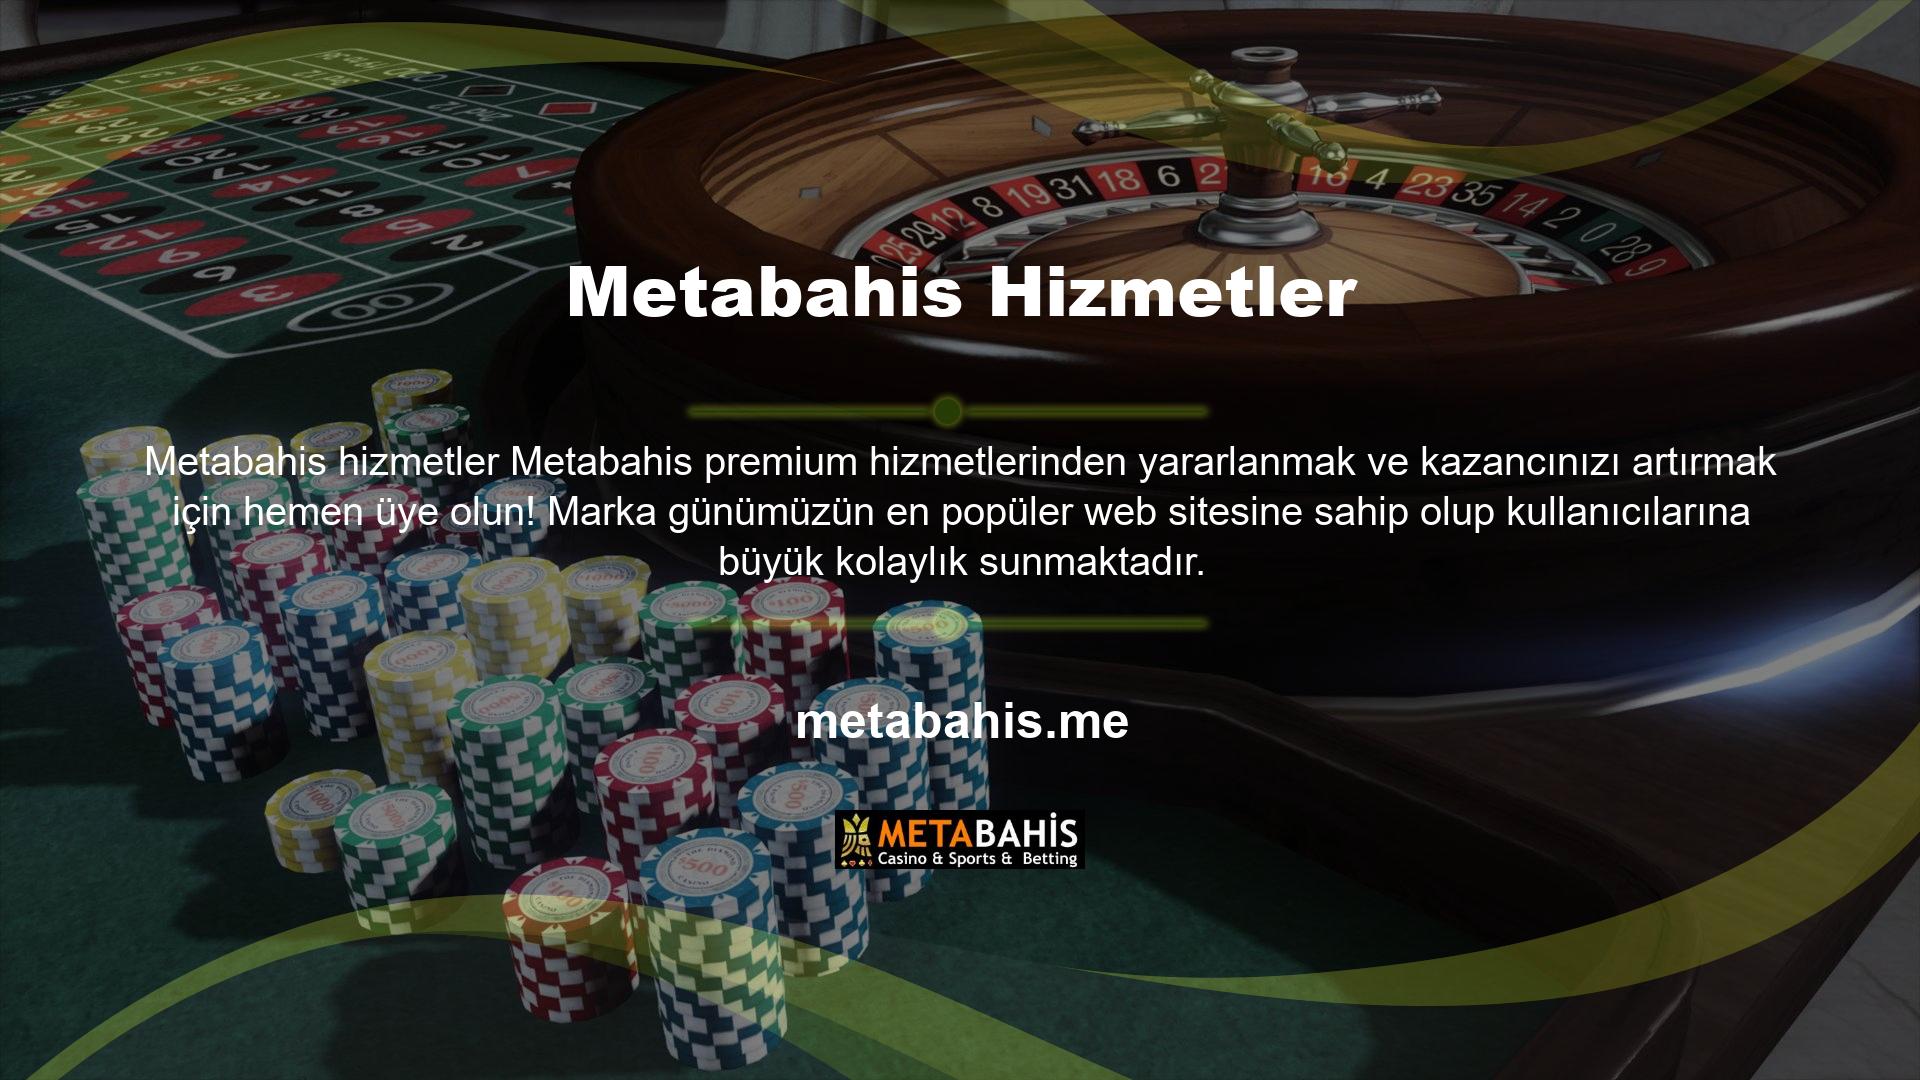 Metabahis Casino Oyun sitesinde casino bölümünün yanı sıra canlı casino hizmetleri de sunulmaktadır